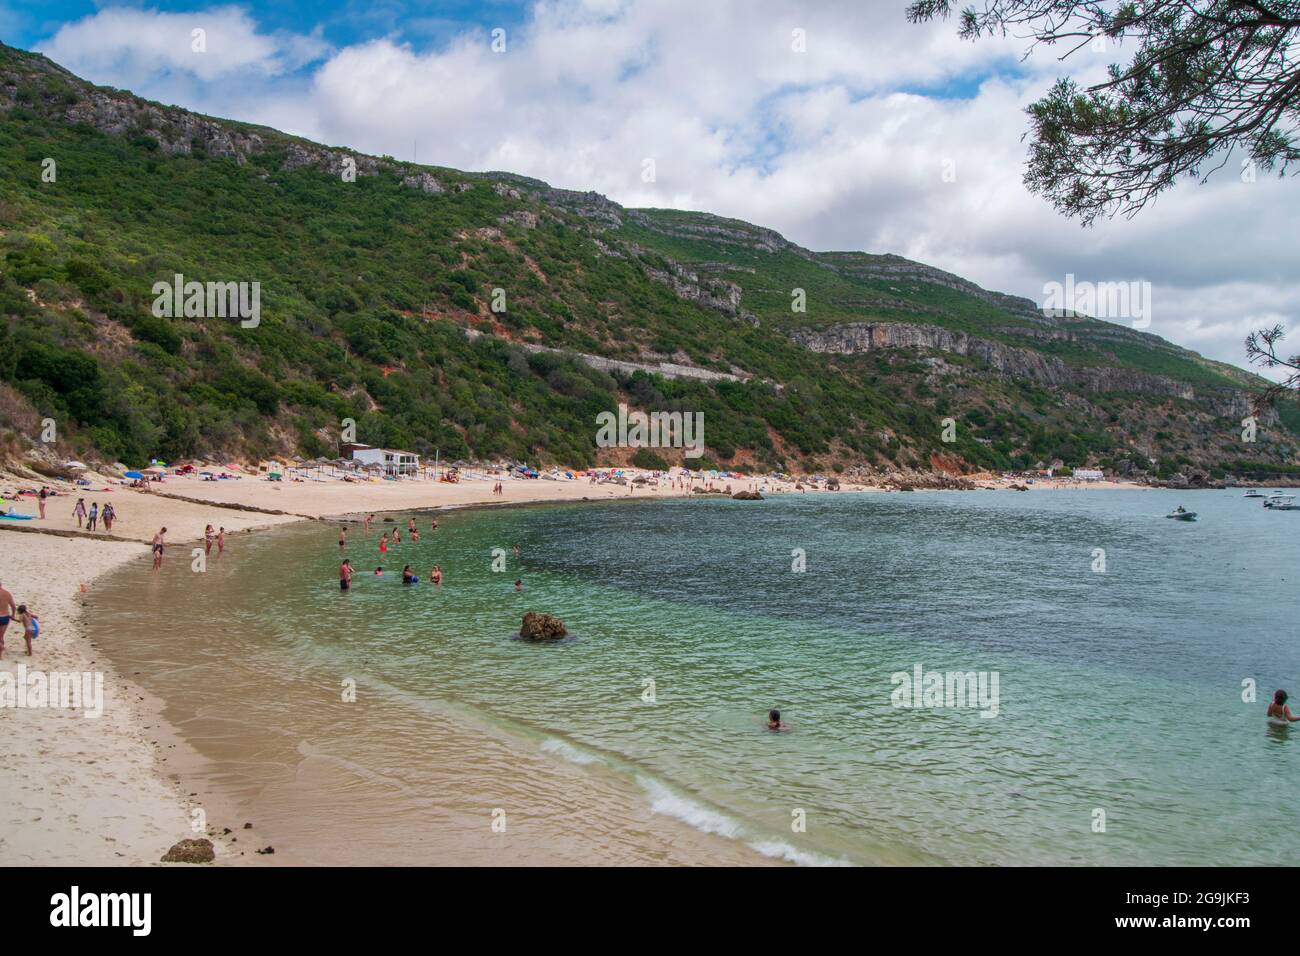 Galapinhos beach located in municipality of Setúbal, in Serra da Arrábida, beautiful Portuguese beaches Stock Photo